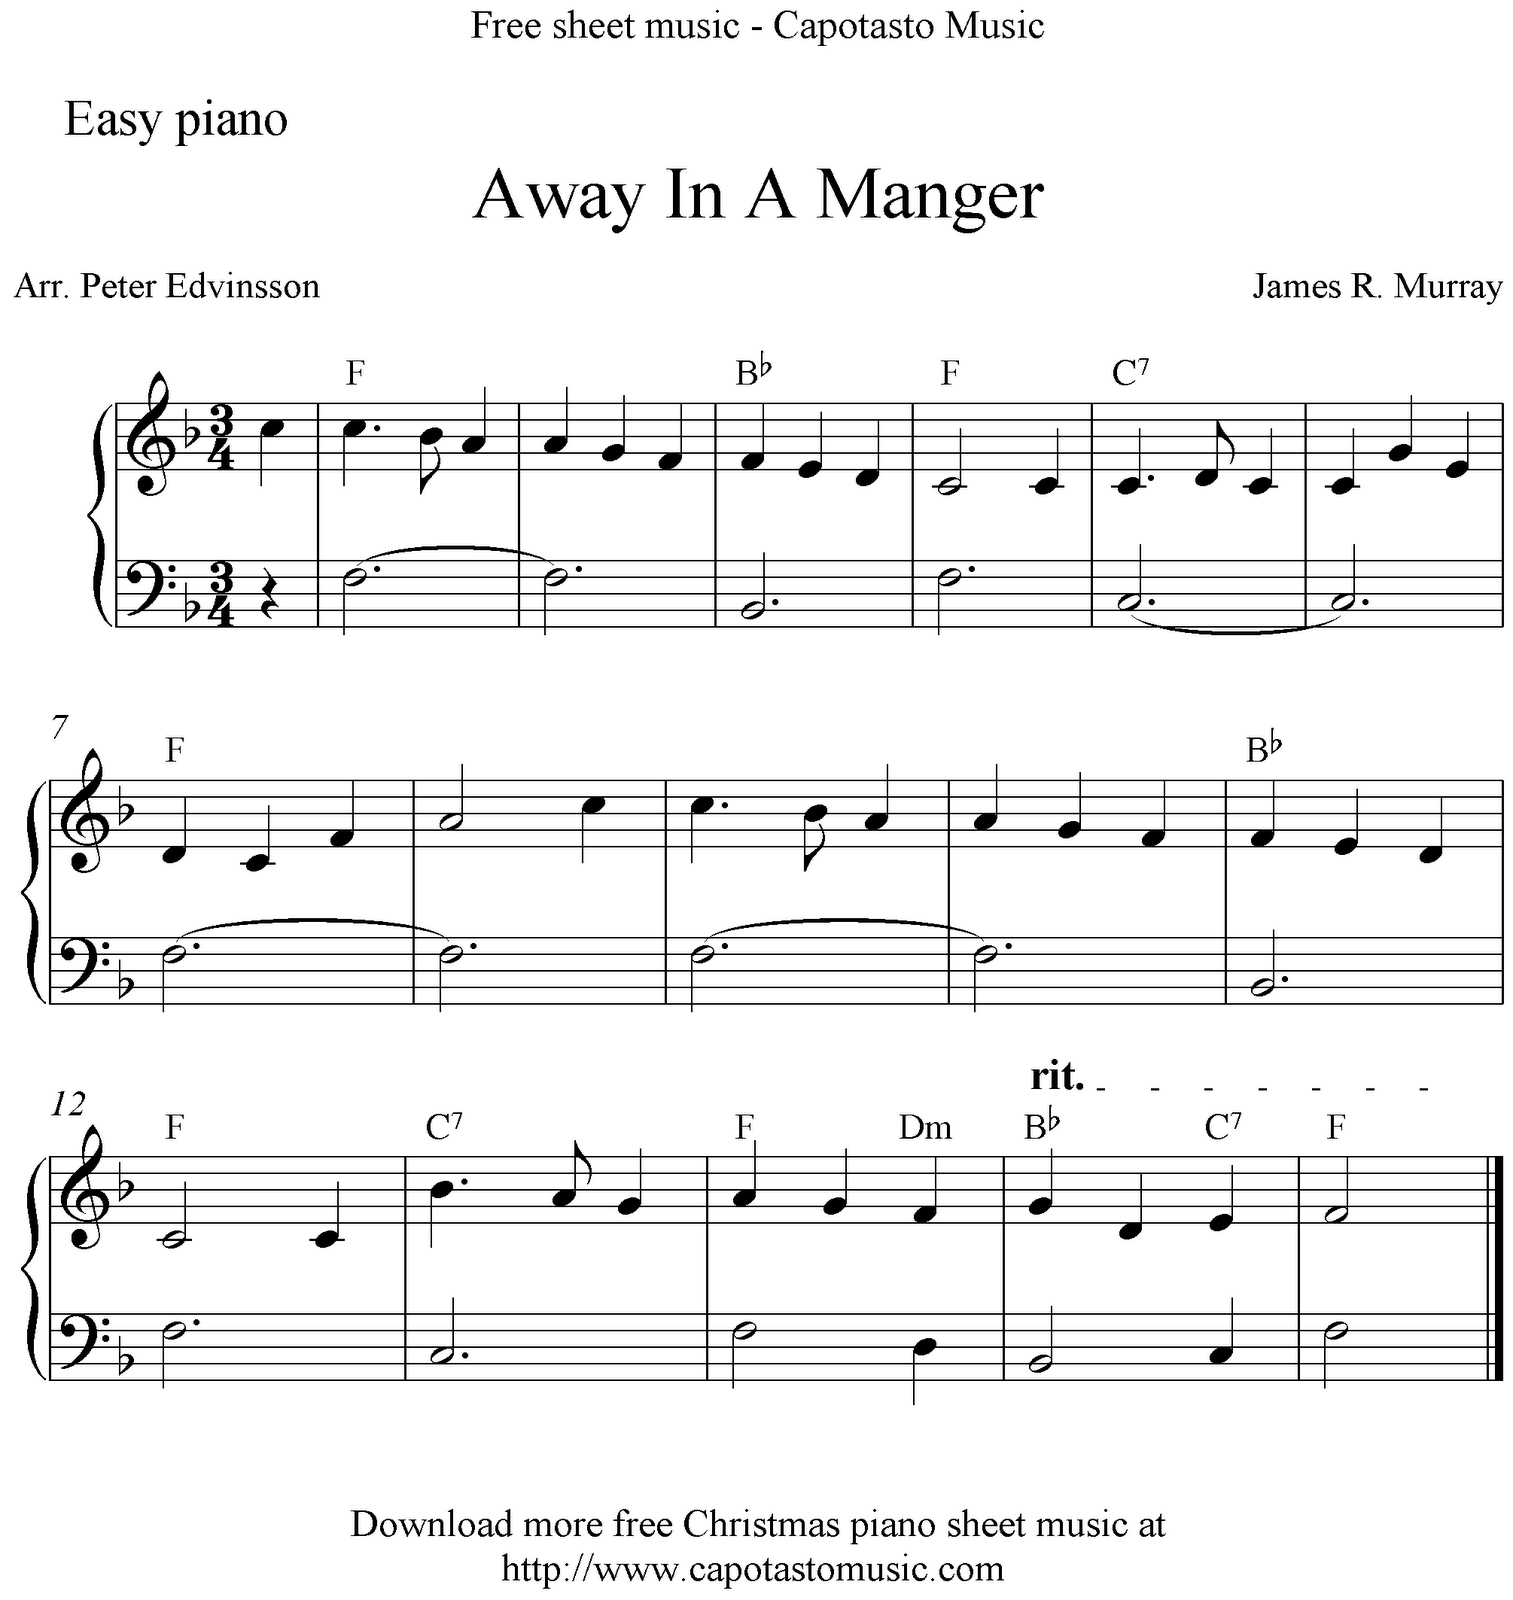 Free Printable Christmas Songs For Piano – Festival Collections - Christmas Music For Piano Free Printable